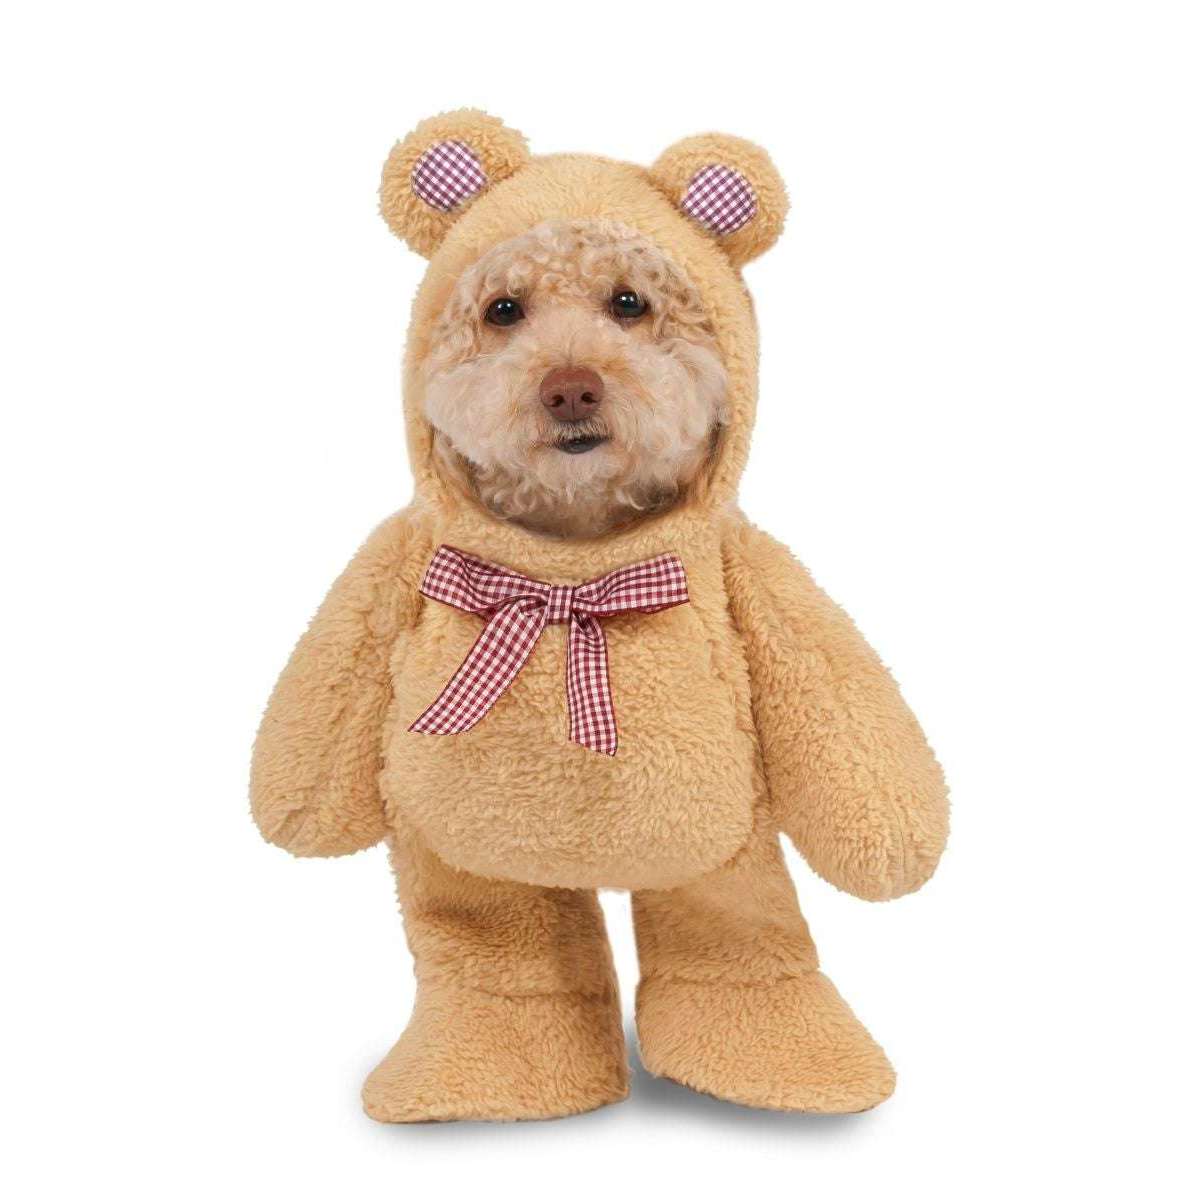 Walking Teddy Bear Pet Costume